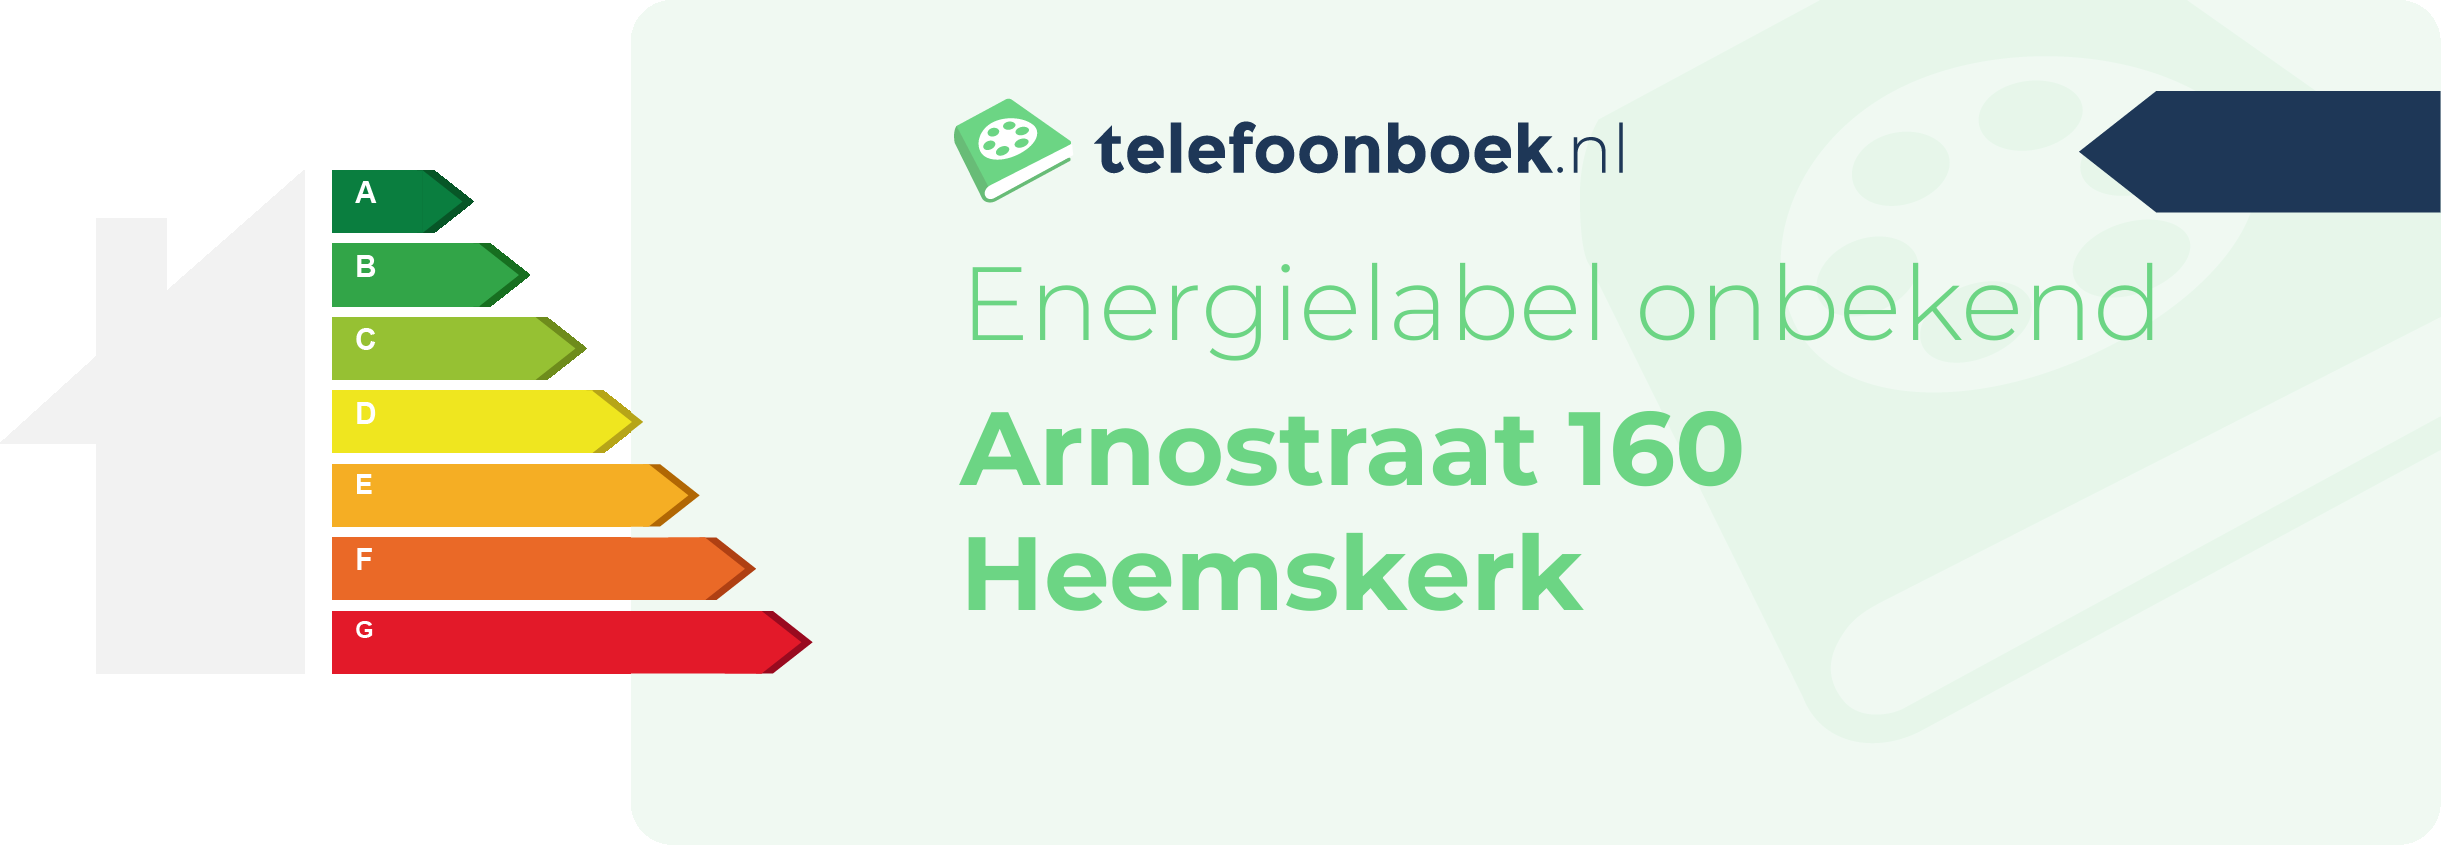 Energielabel Arnostraat 160 Heemskerk